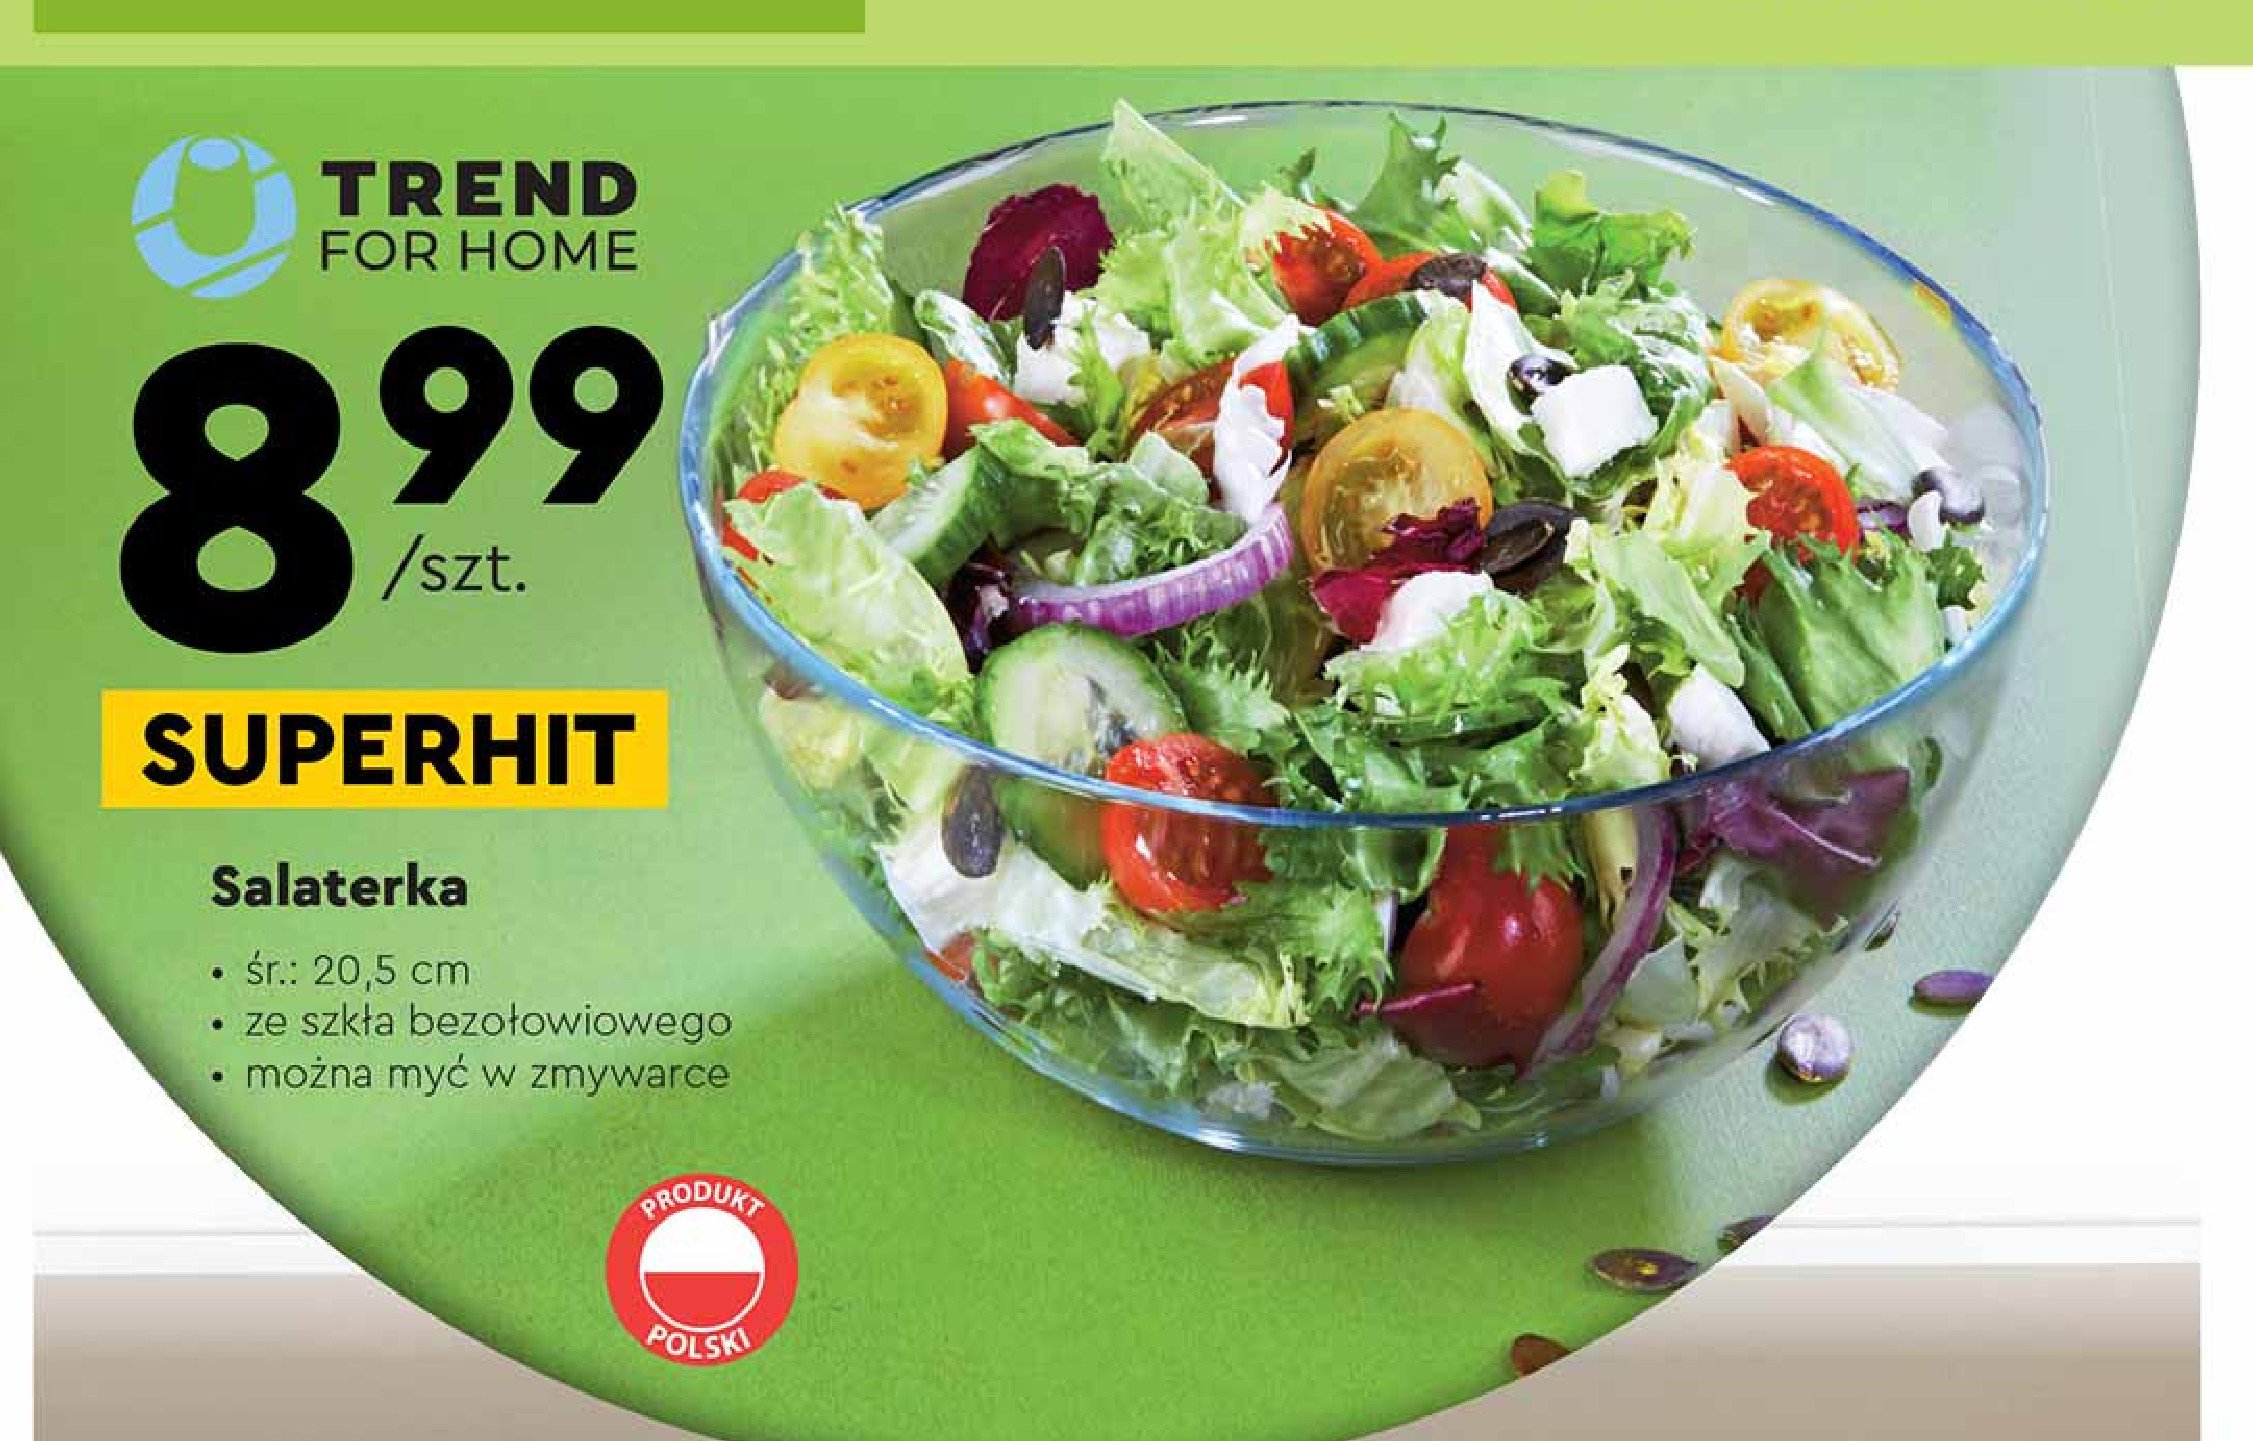 Salaterka 20.5 cm Trend for home promocja